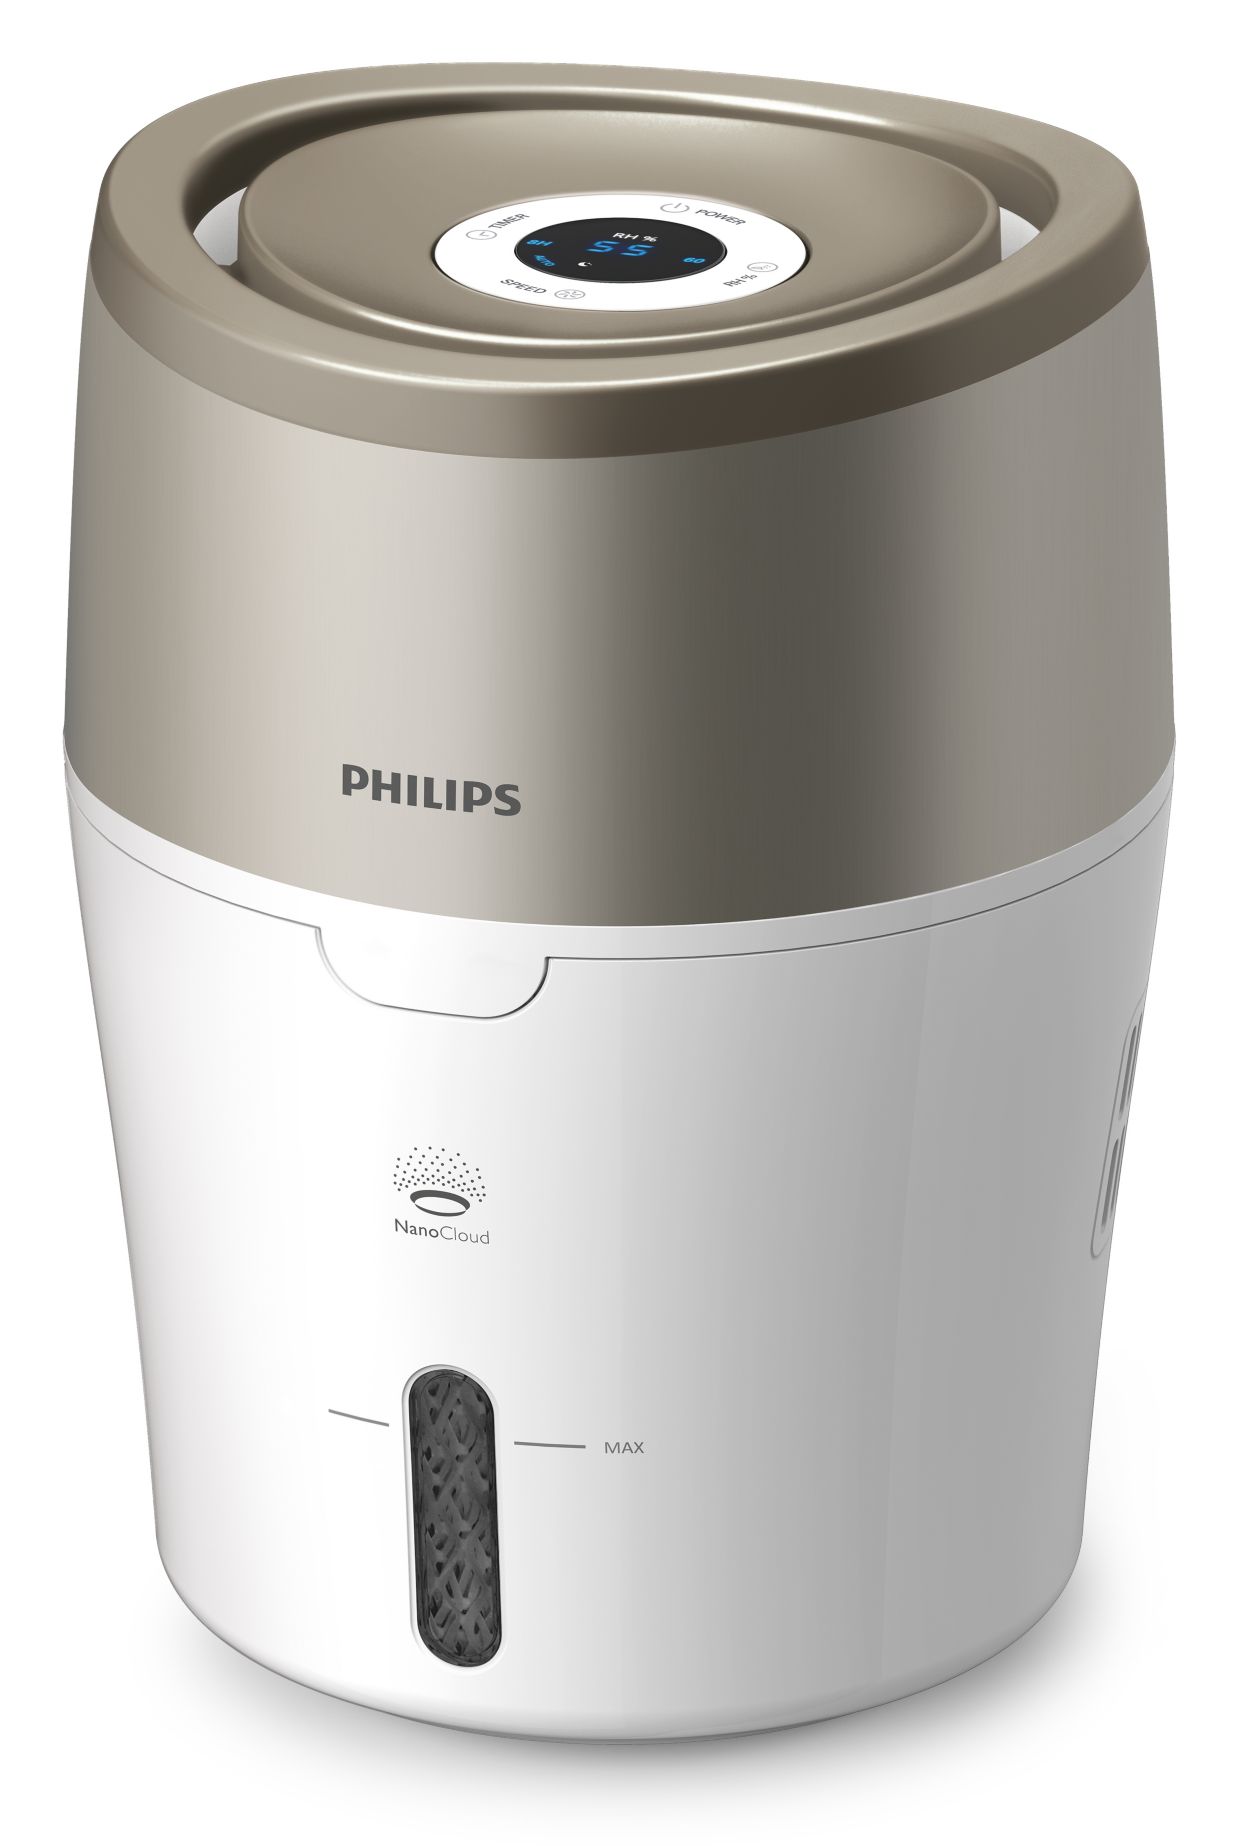 Humidificateur d'air Philips HU4803/01 2L Blanc et gris perle